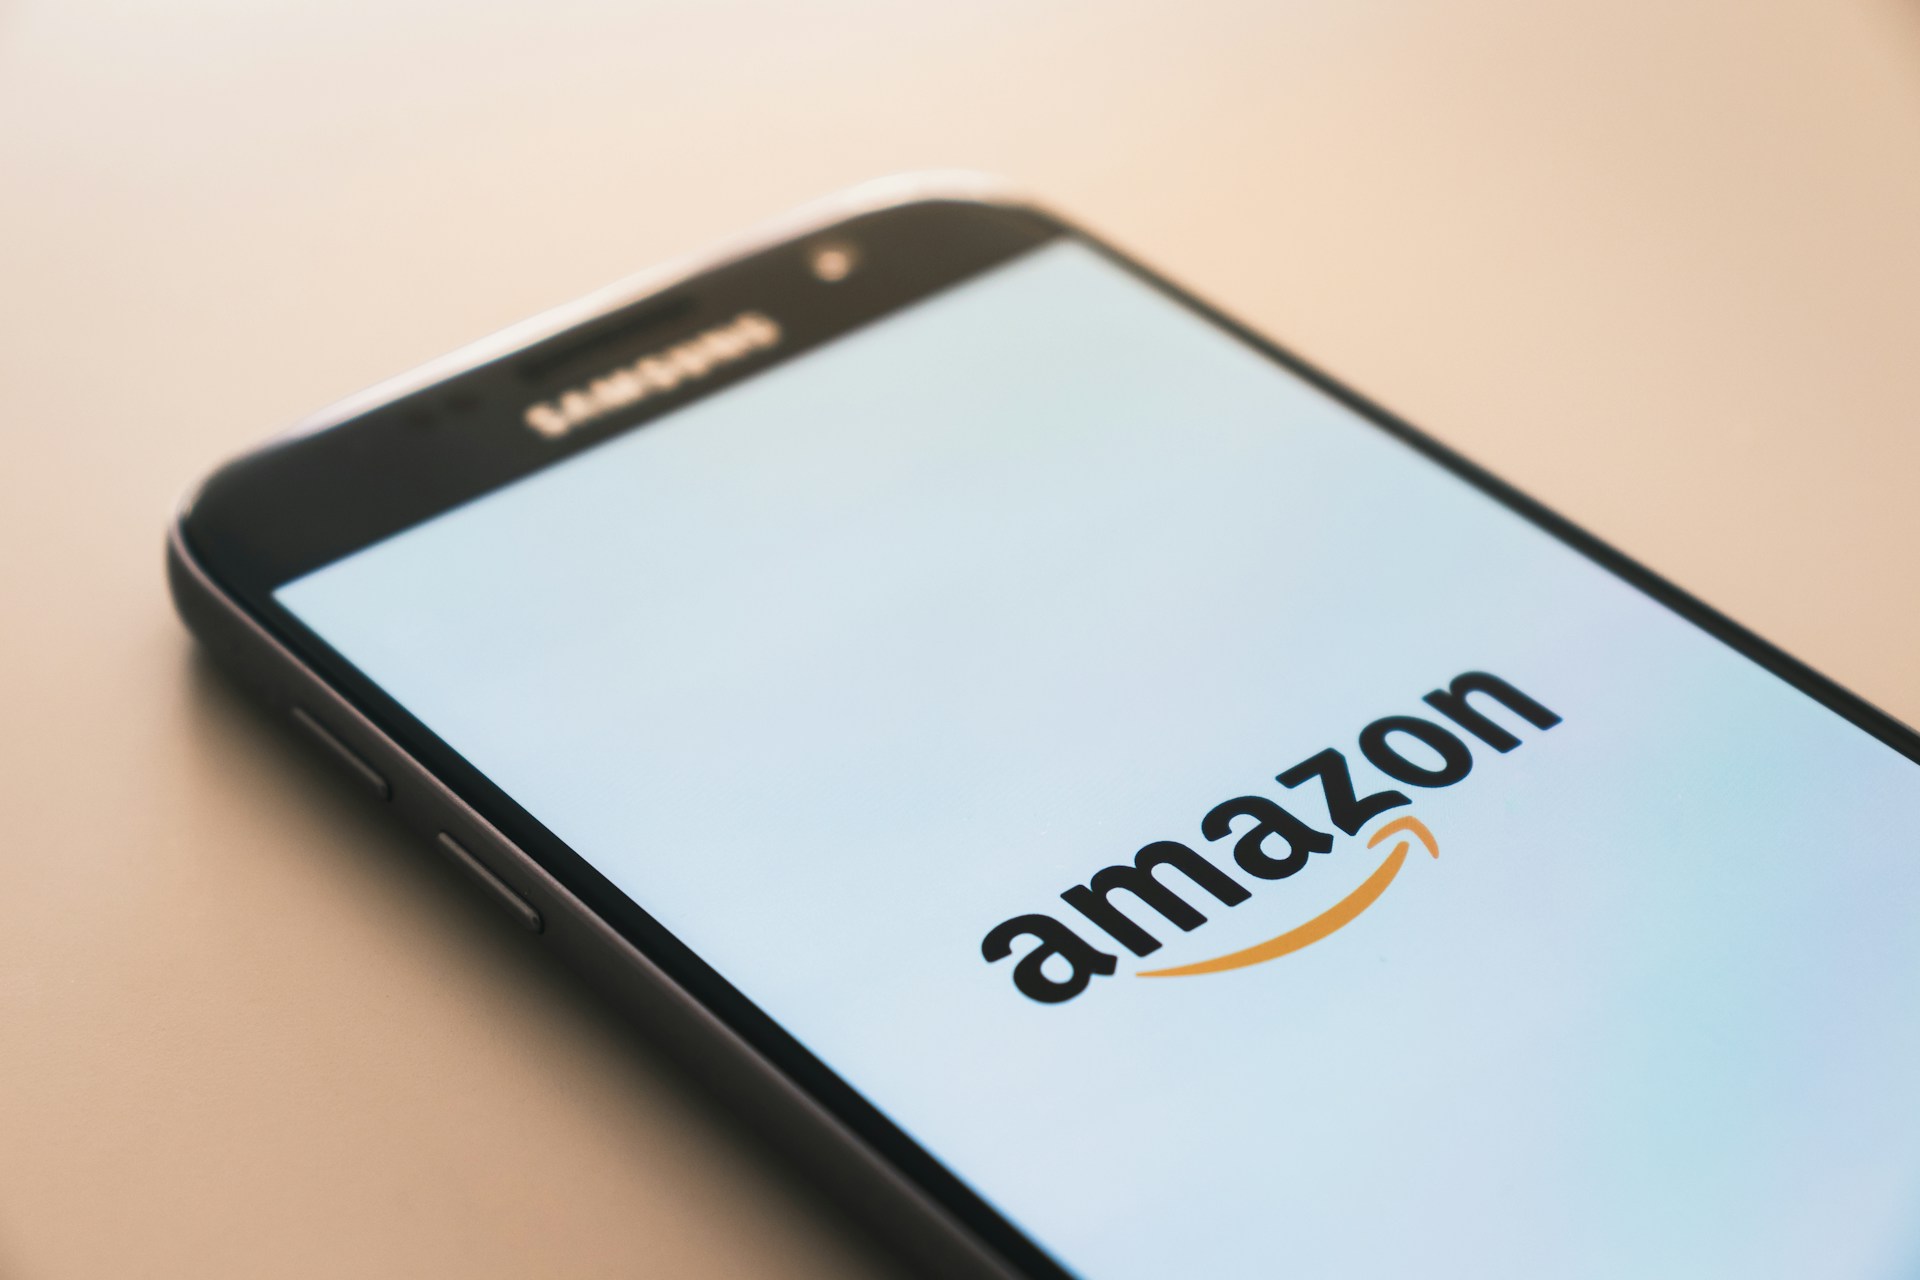 Amazon розширює доступність Q - корпоративного чат-бота зі штучним інтелектом